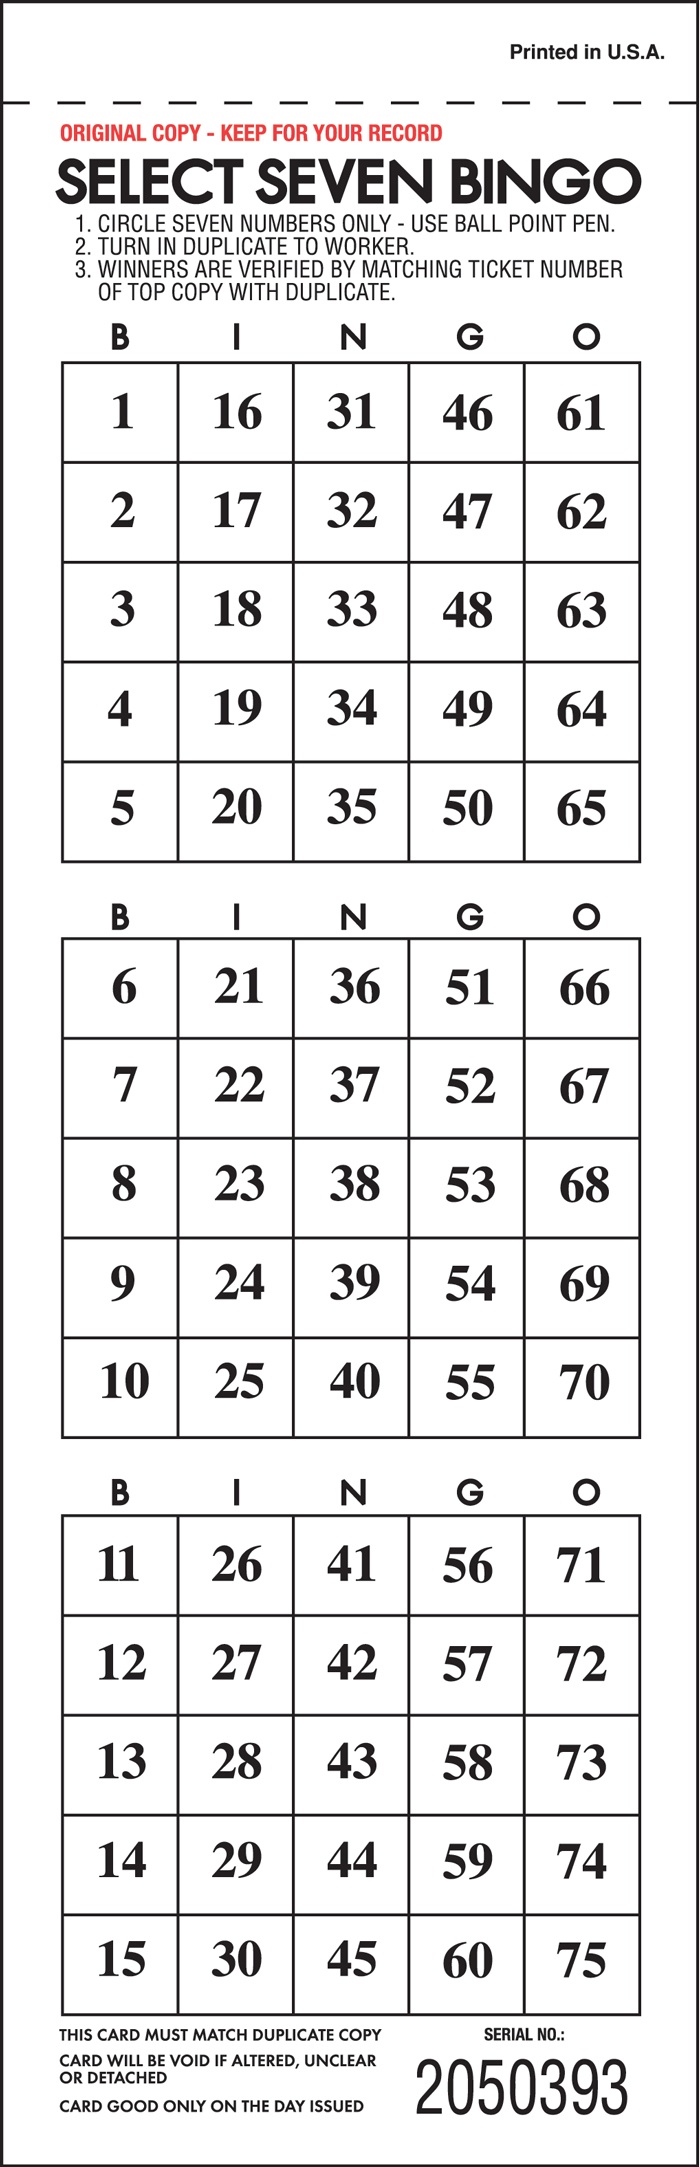 Select 7 Bingo - 3 ON